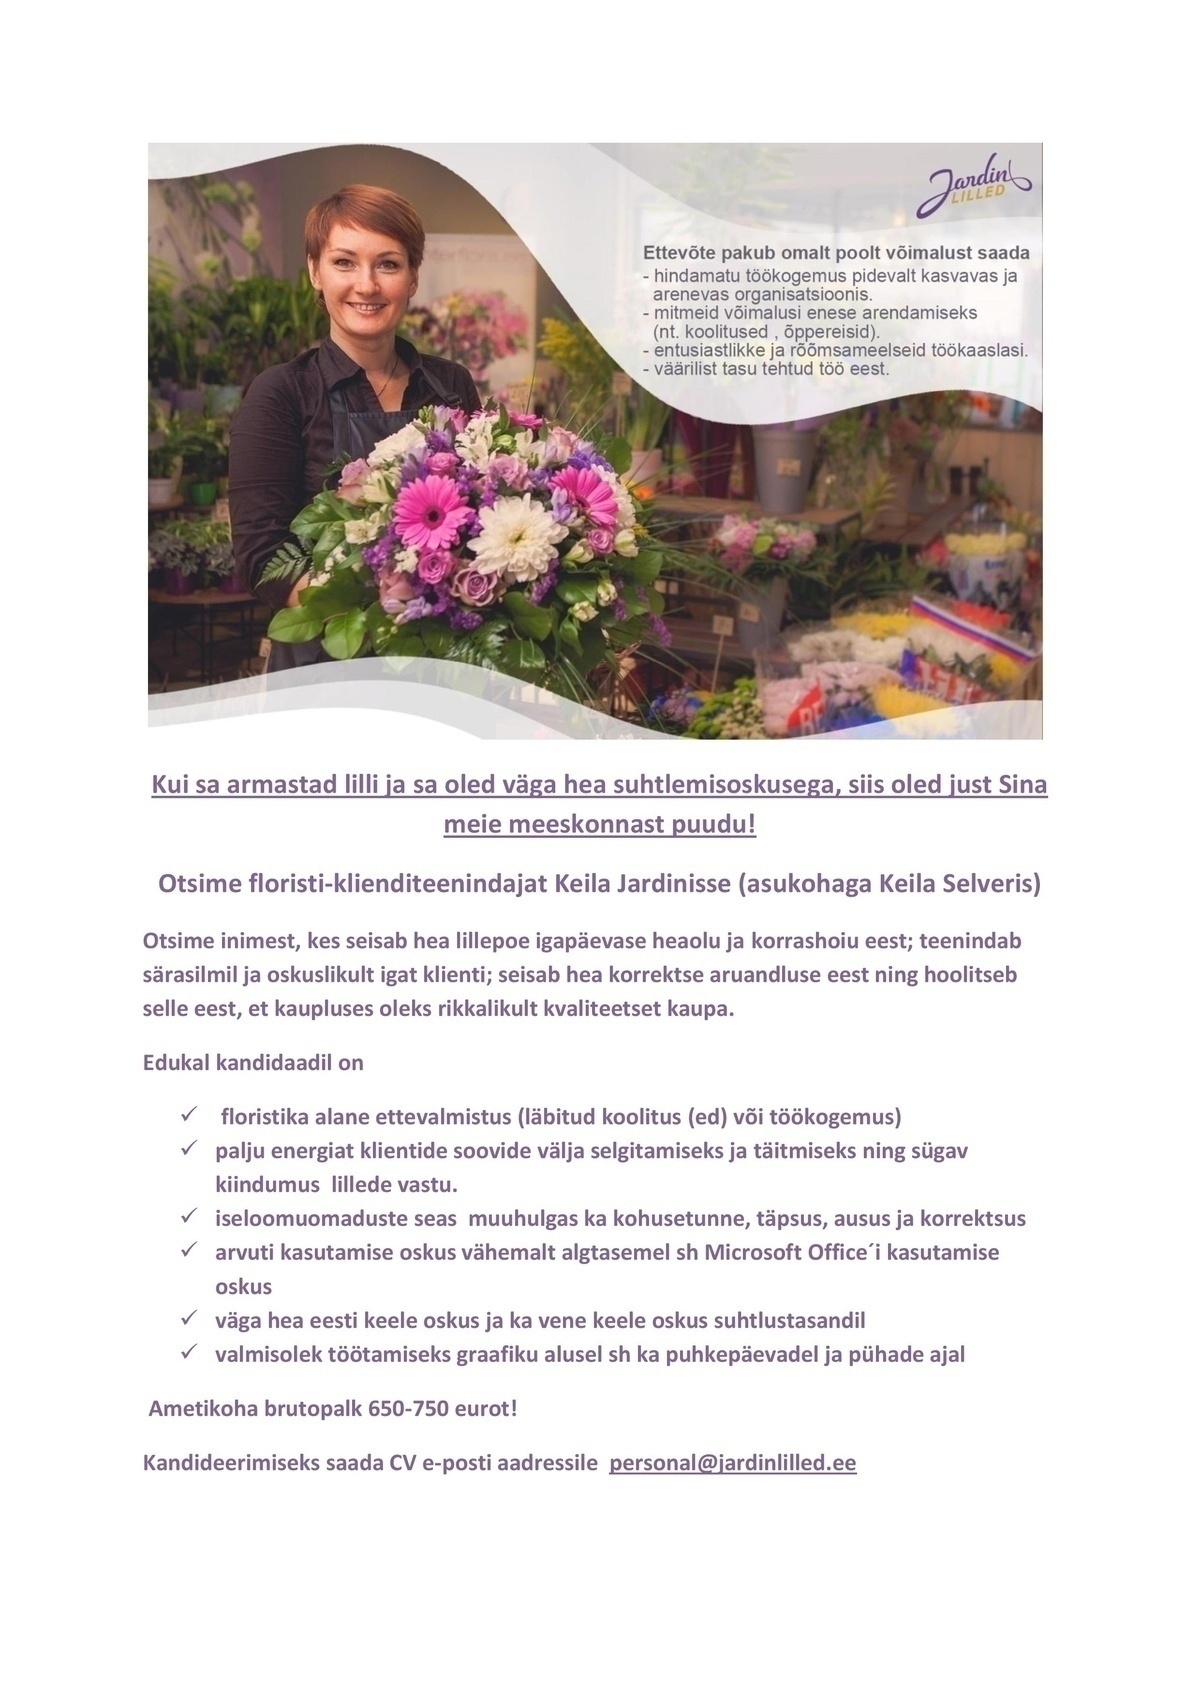 Jardin OÜ Florist-klienditeenindaja (KEILA)